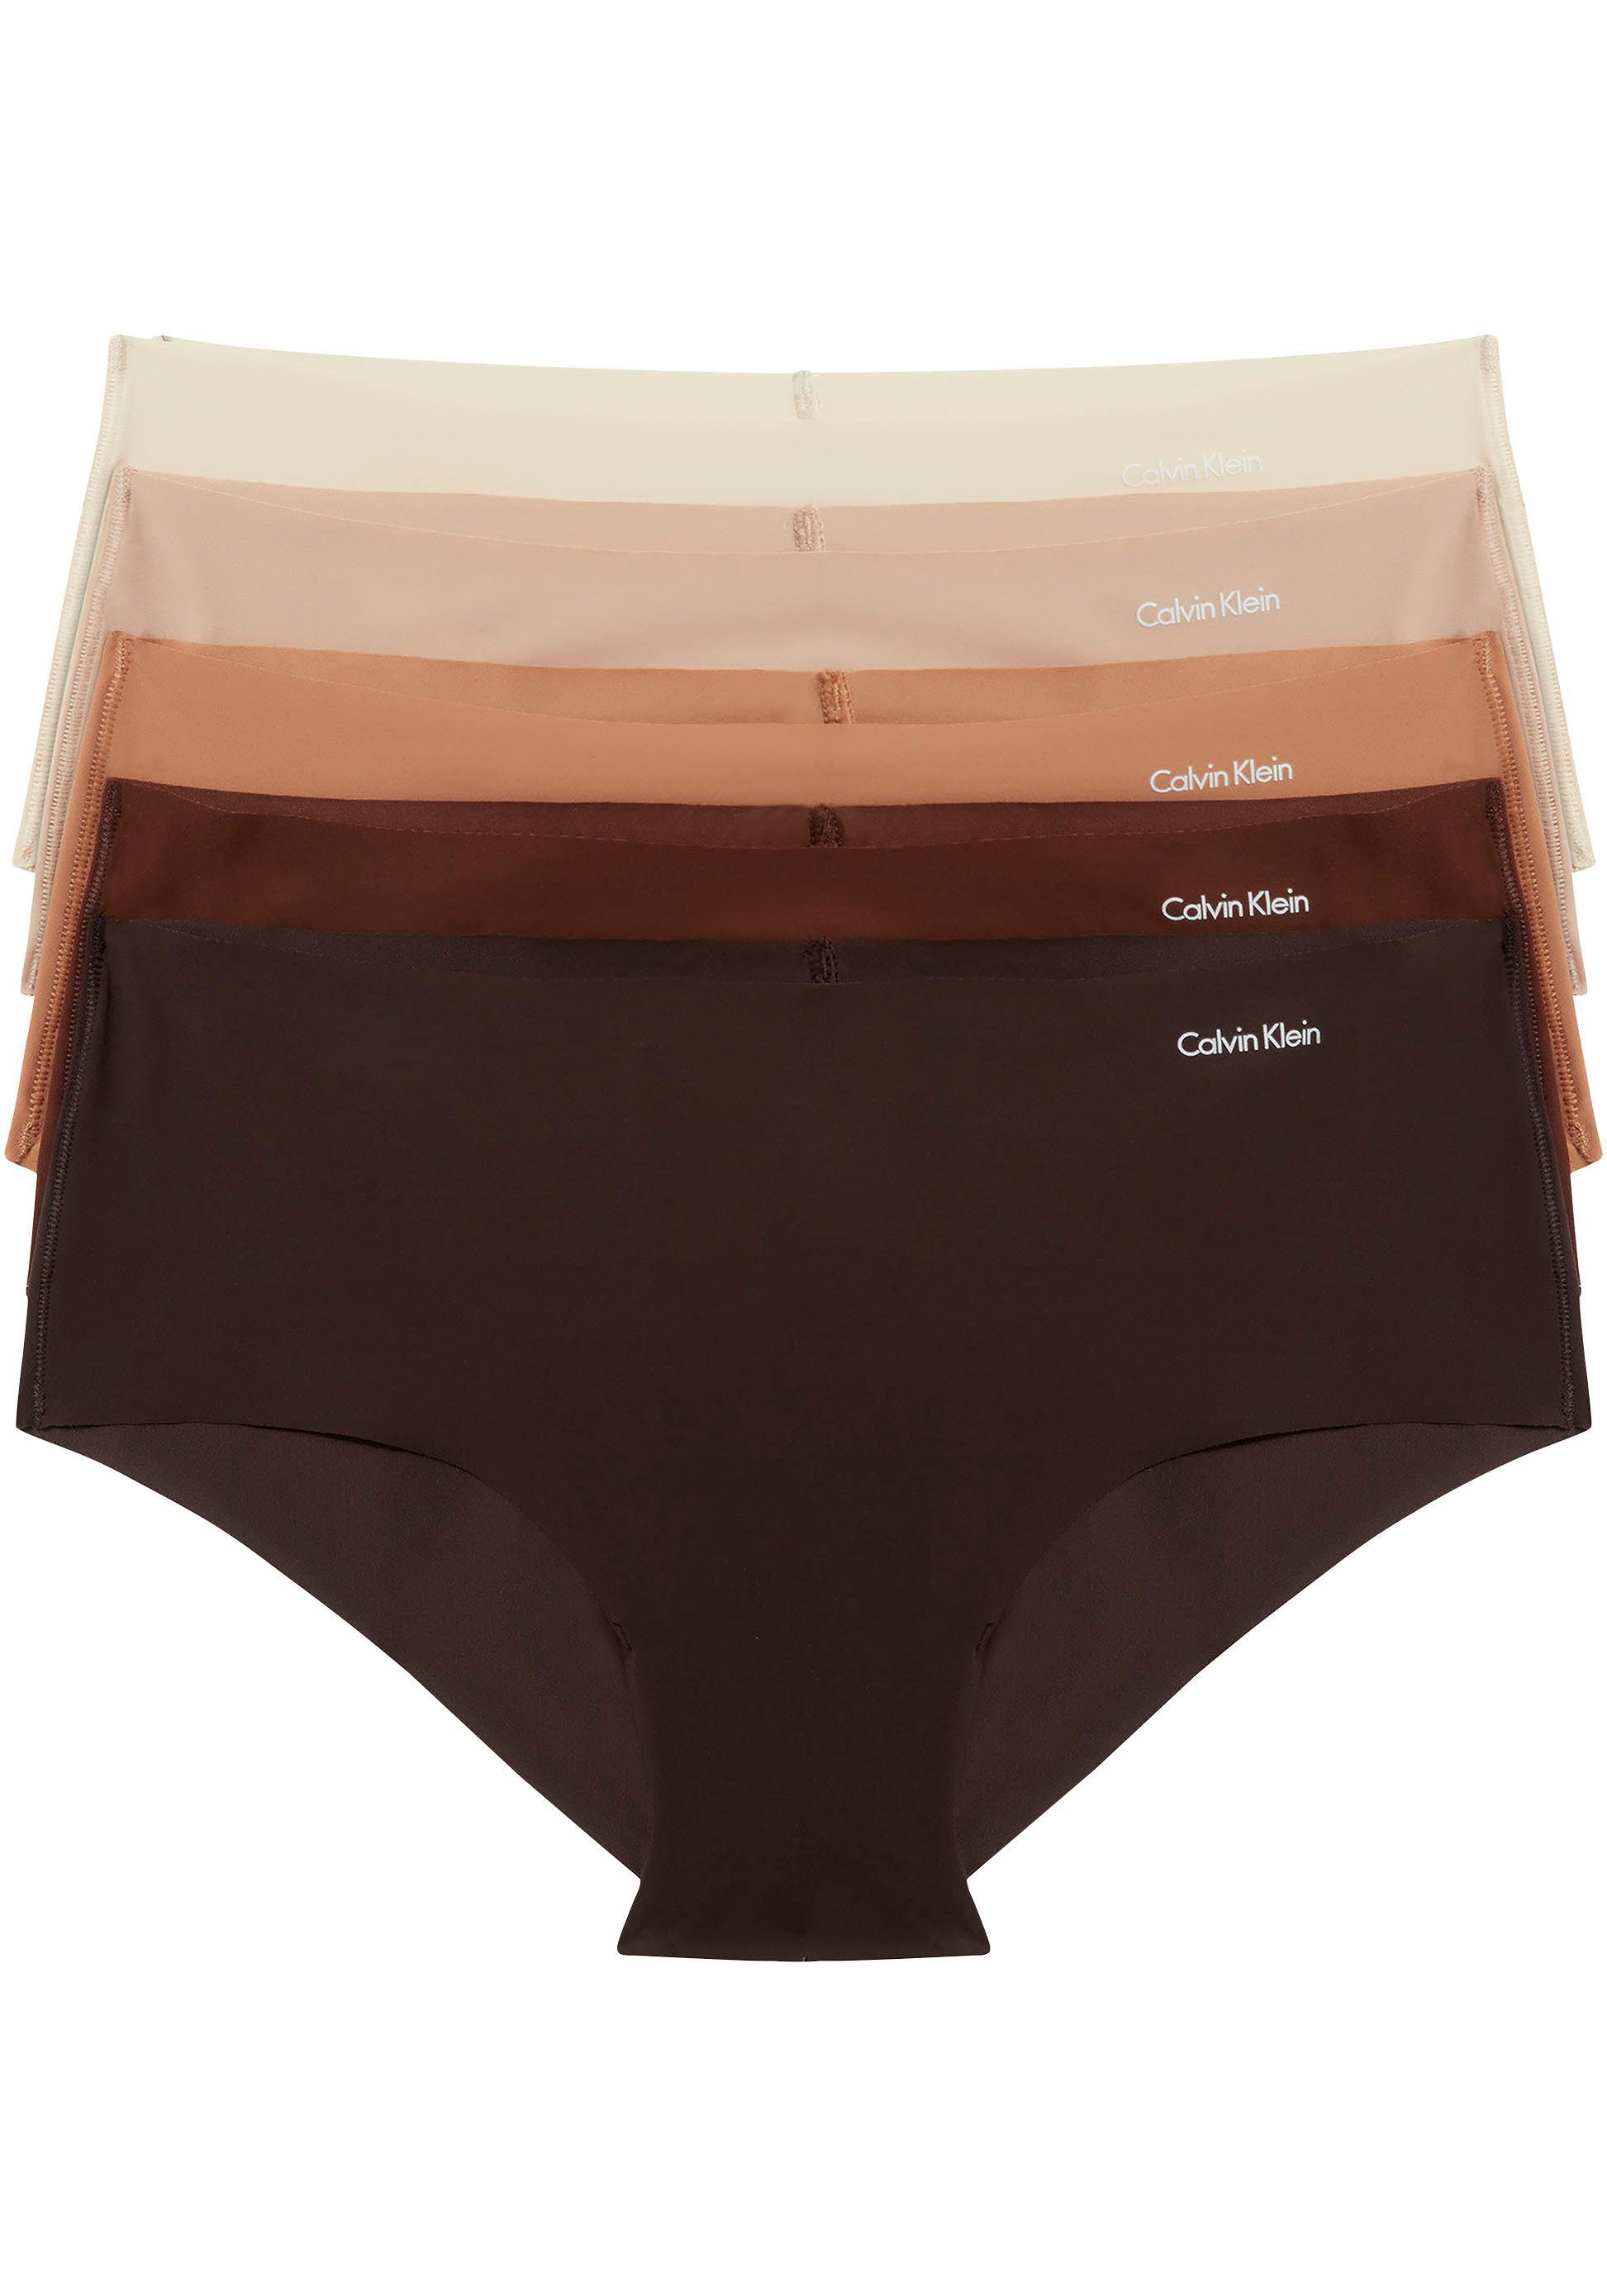 Calvin Klein Underwear Klein Calvin BIKINI Markenlabel 5PK 5-St., mit 5er-Pack) (Packung, Bikinislip